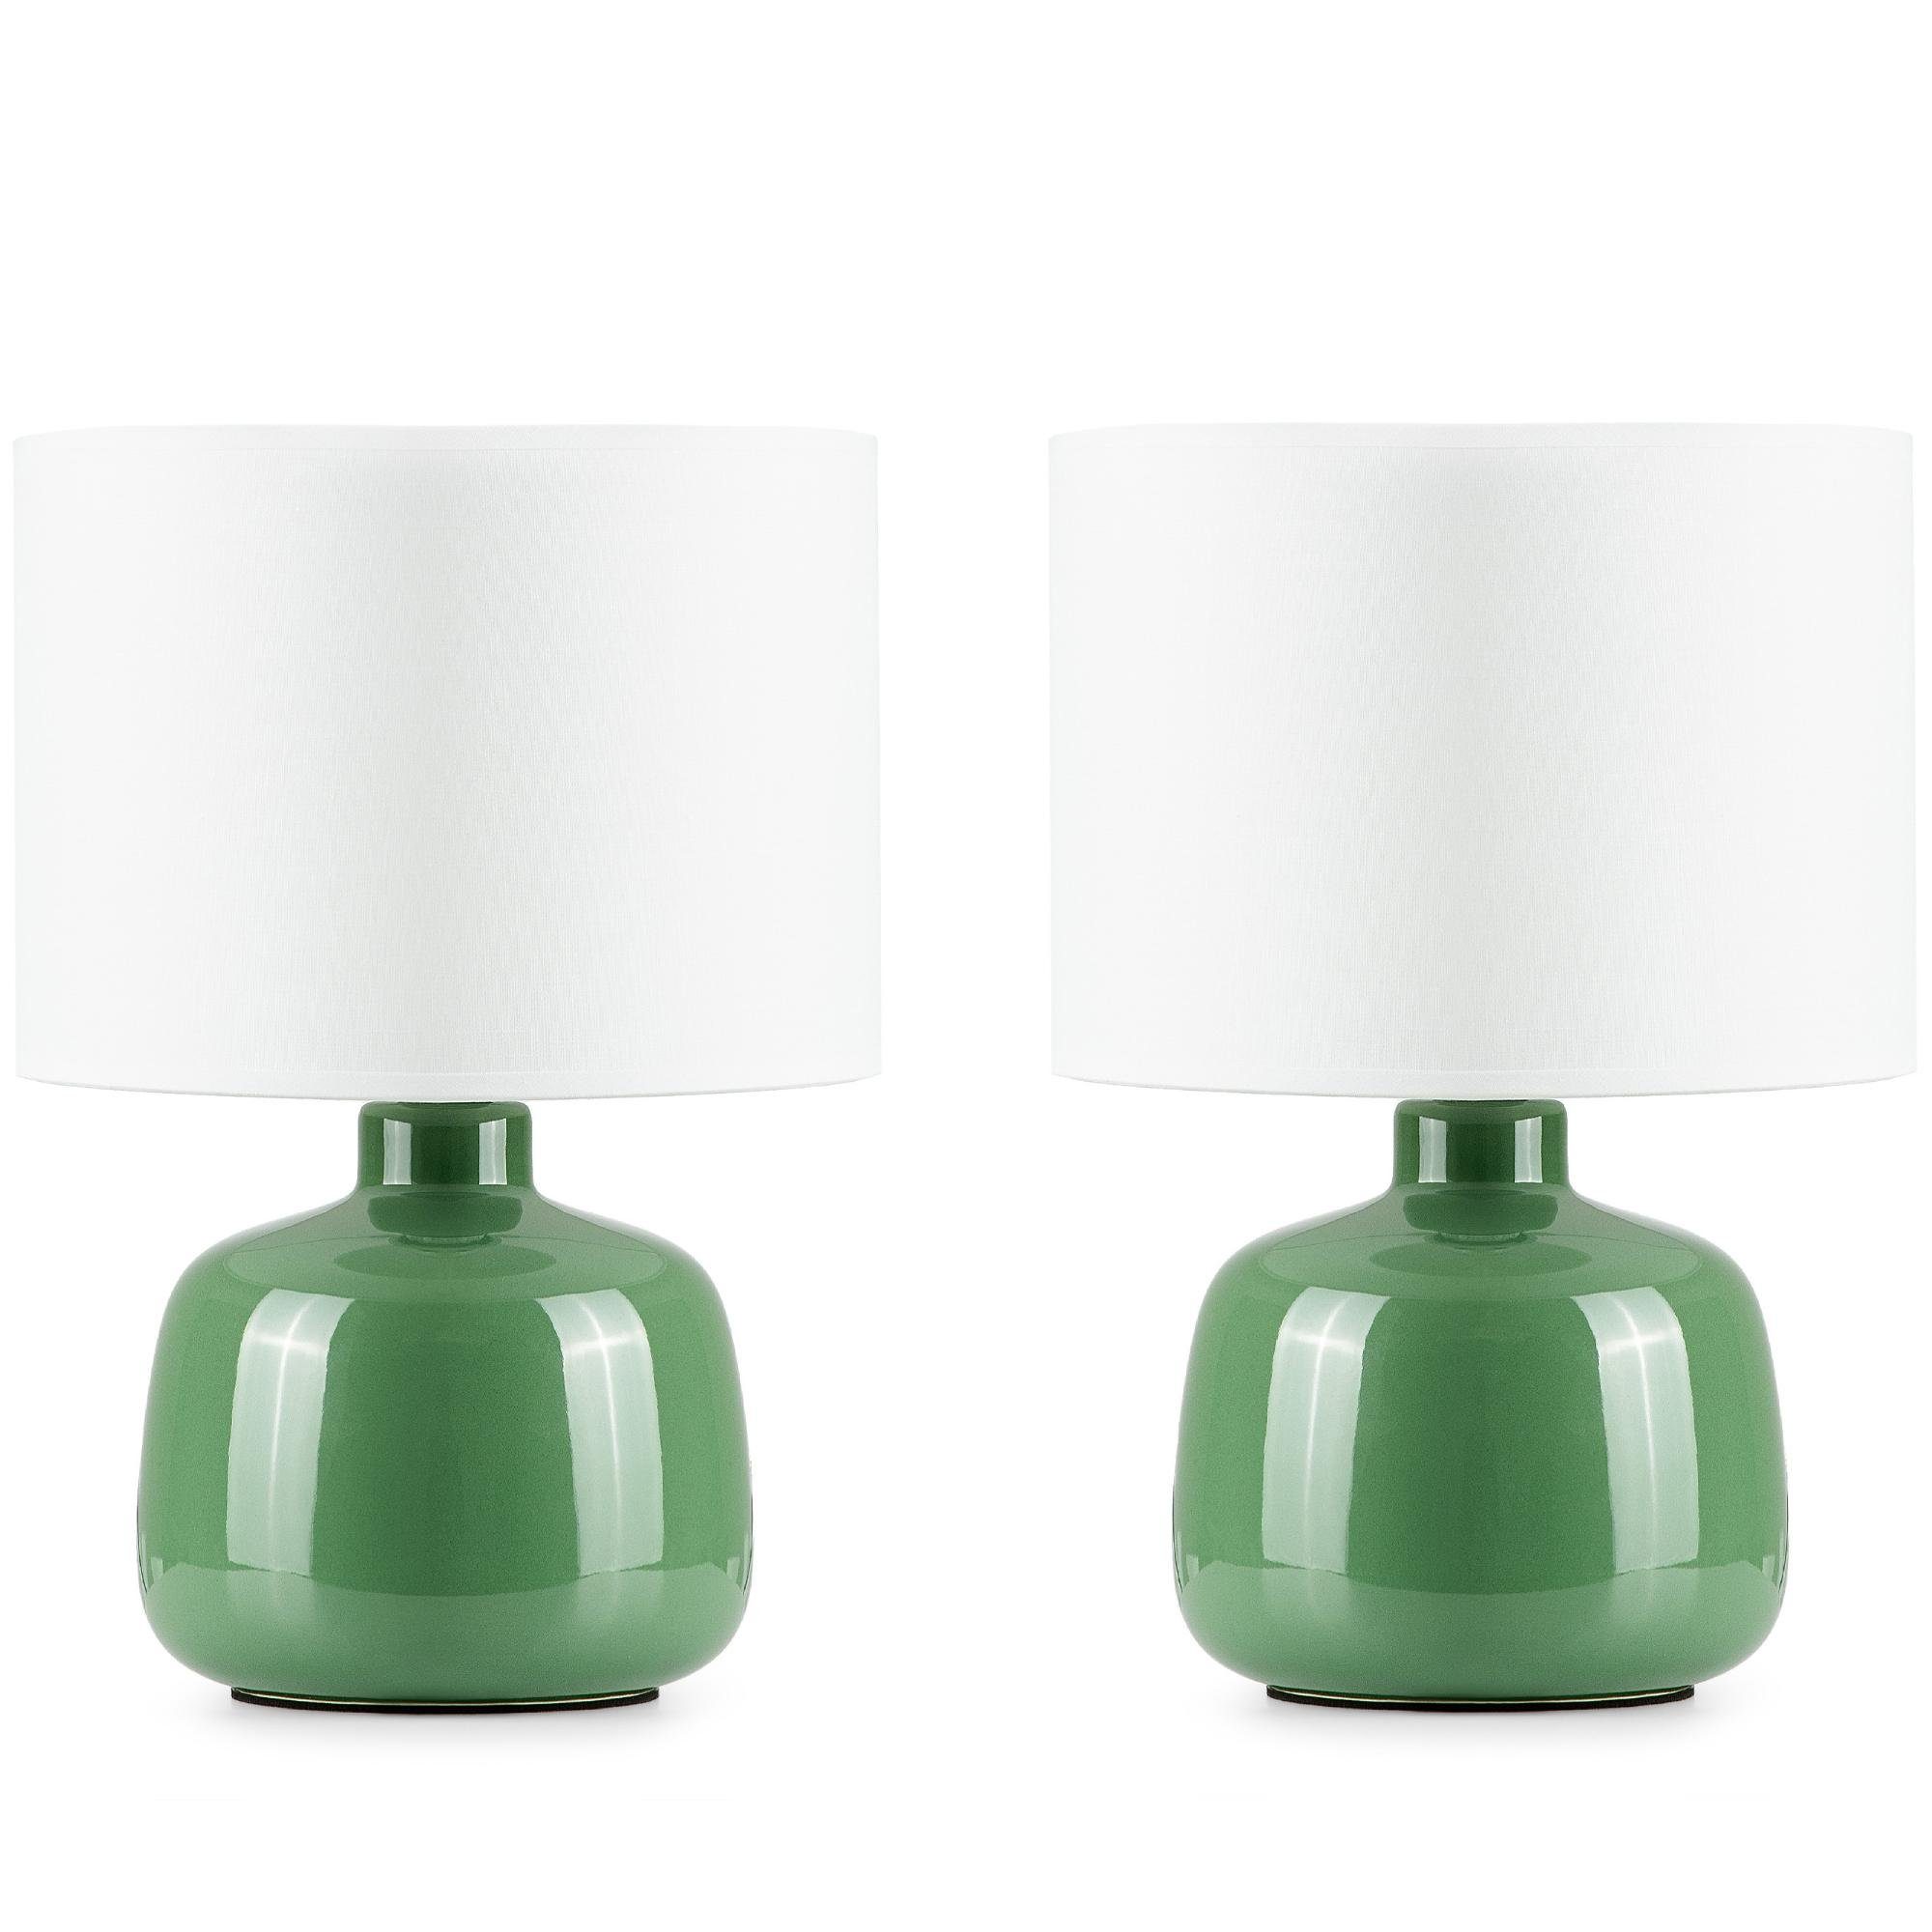 Konsimo Tischleuchte STIVUS Tischleuchten, ohne Leuchtmittel, Keramiksockel, Passt zu jedem Dekor, 2 Stück grün